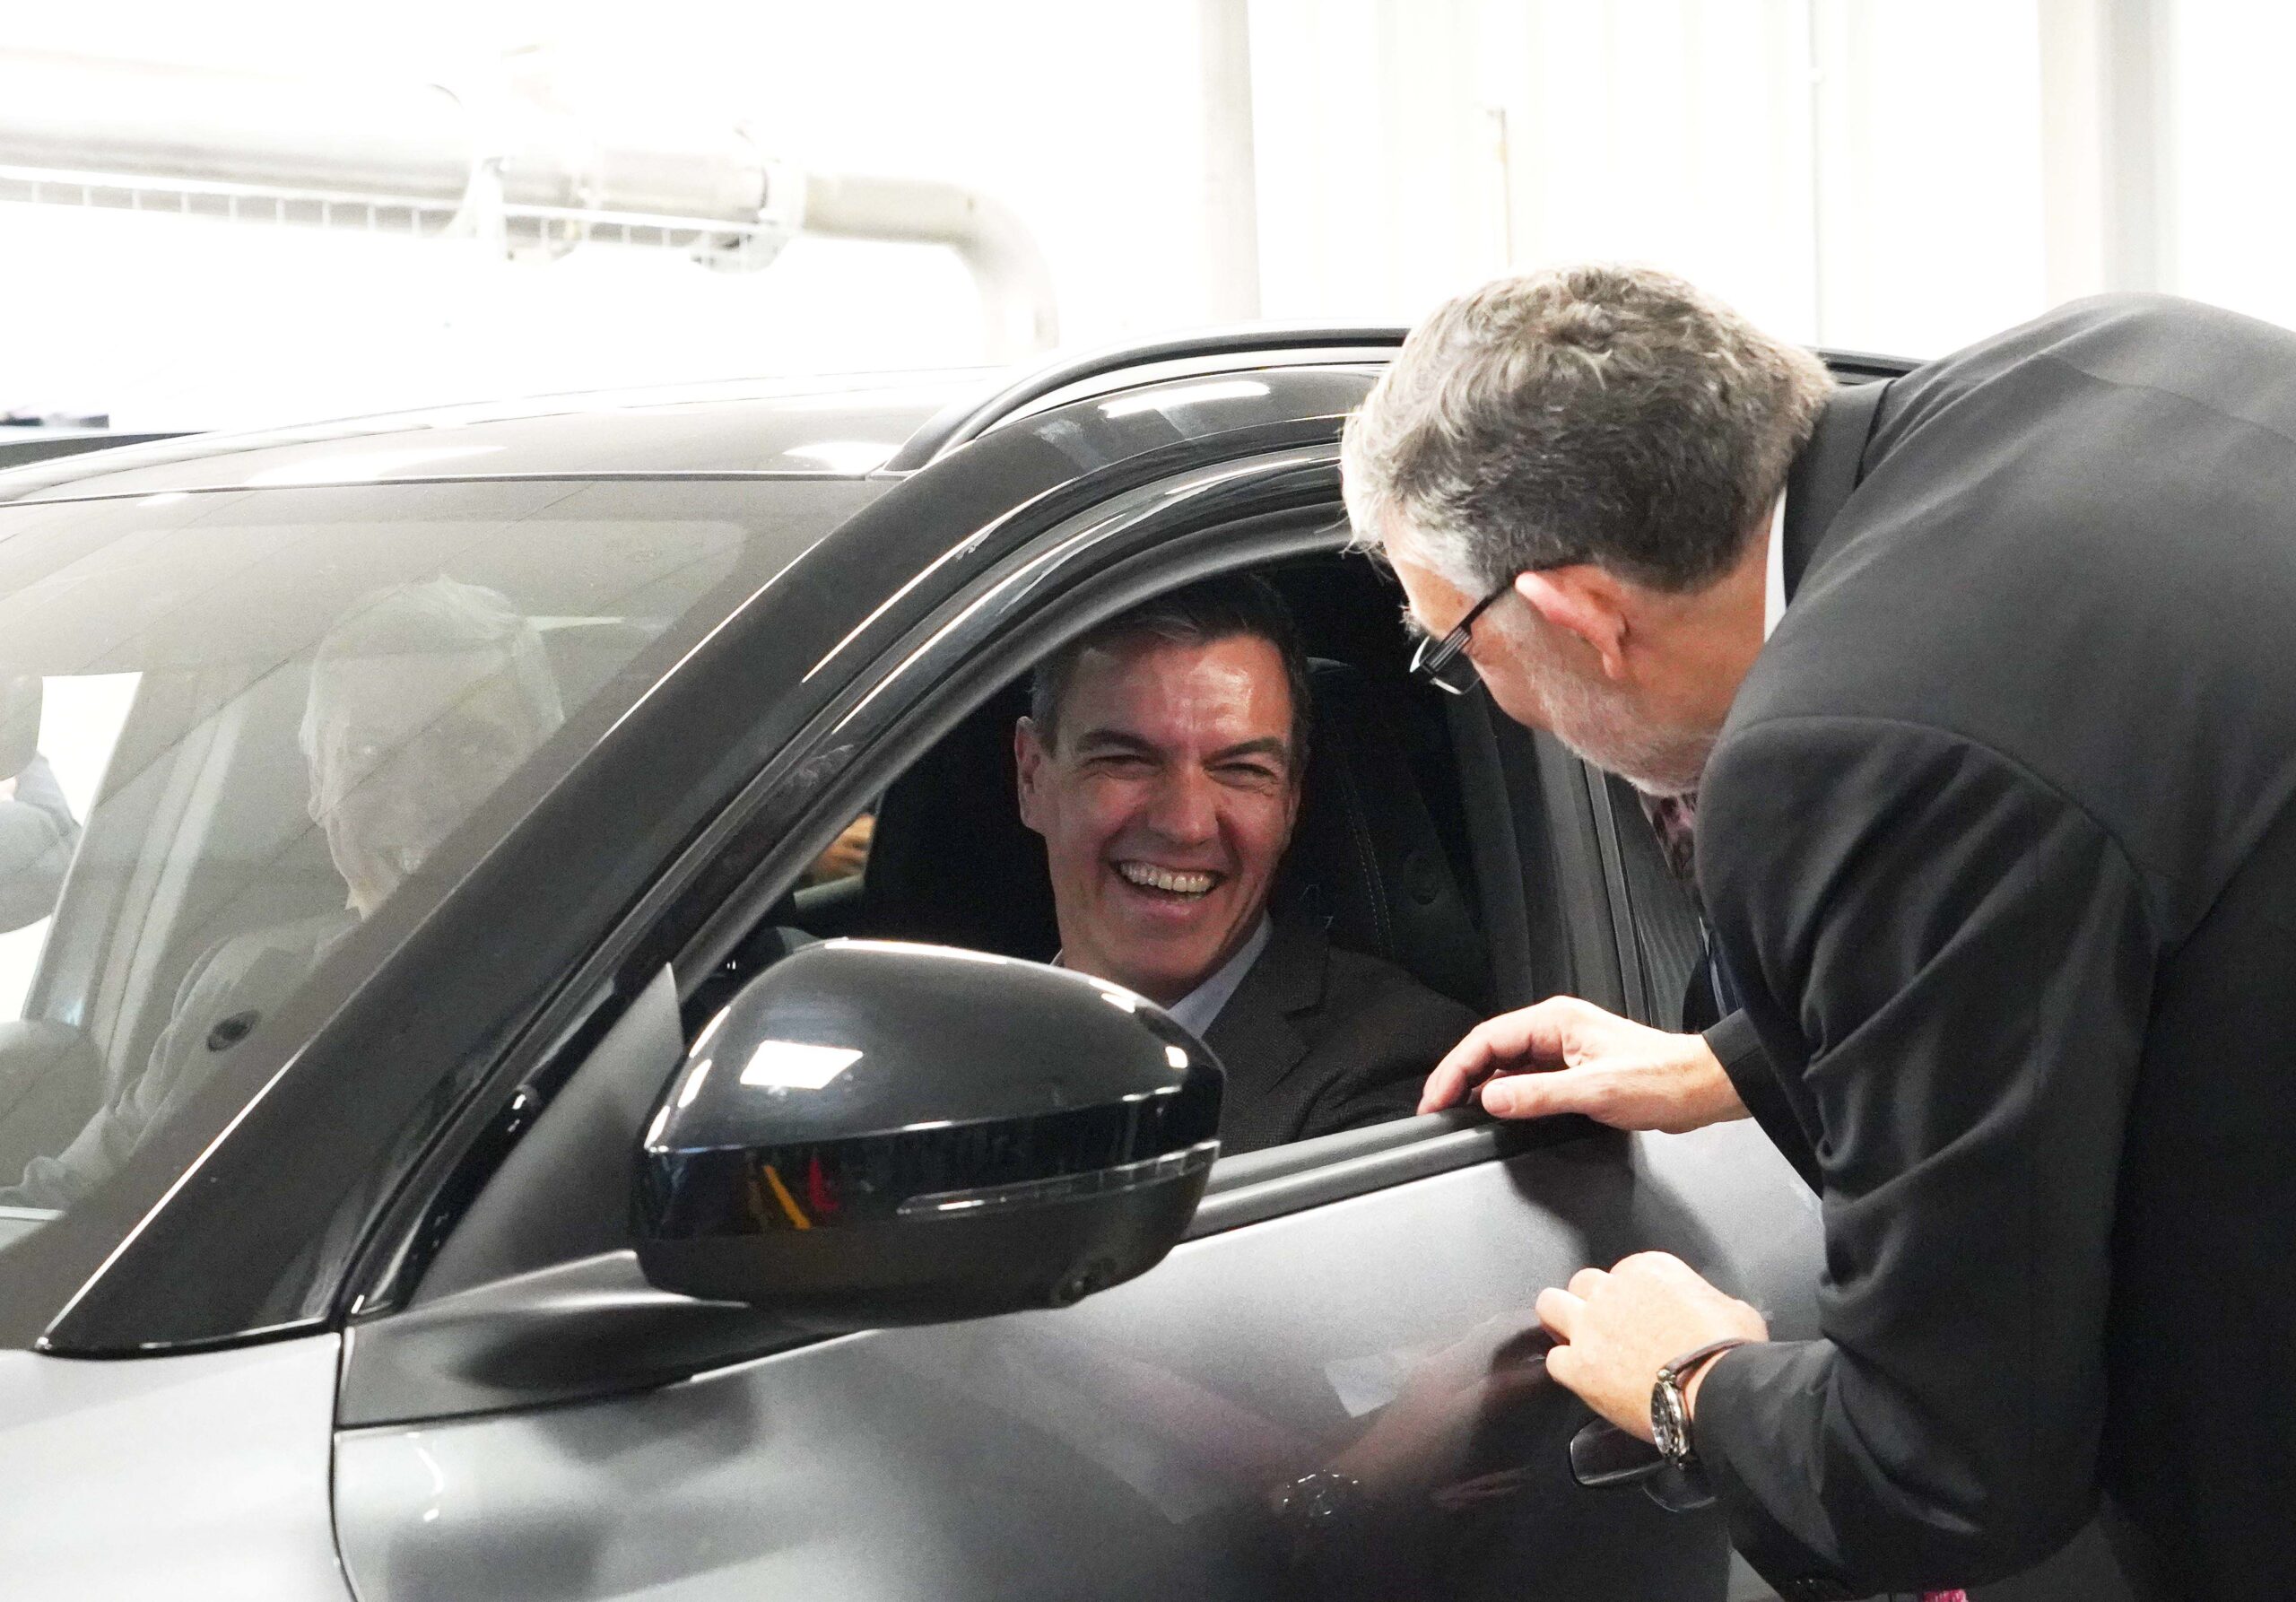 El nuevo comisionado del Perte rechazó el plan de Sánchez con el coche eléctrico hace un mes